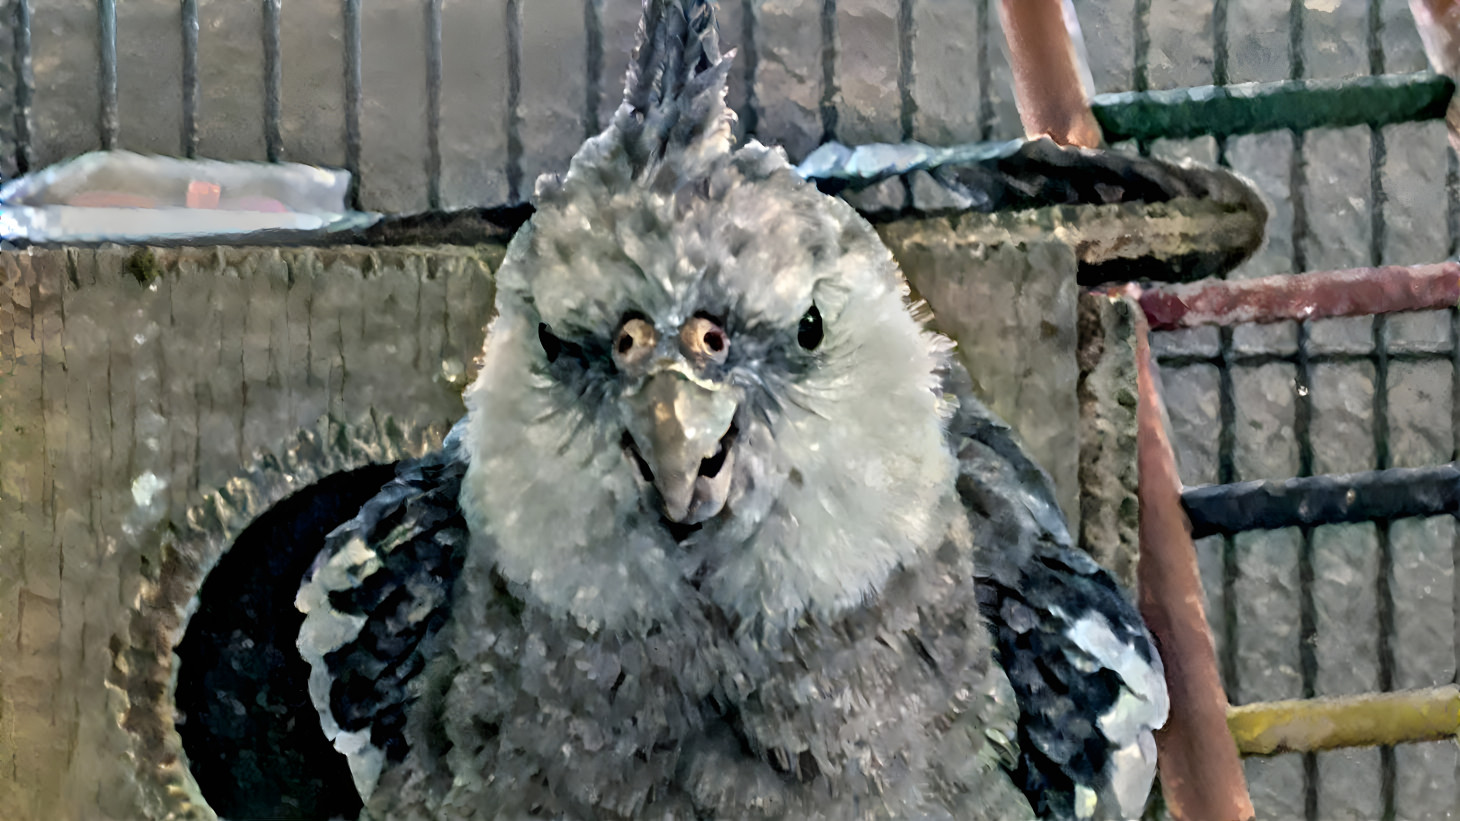 The Grumpy Bird